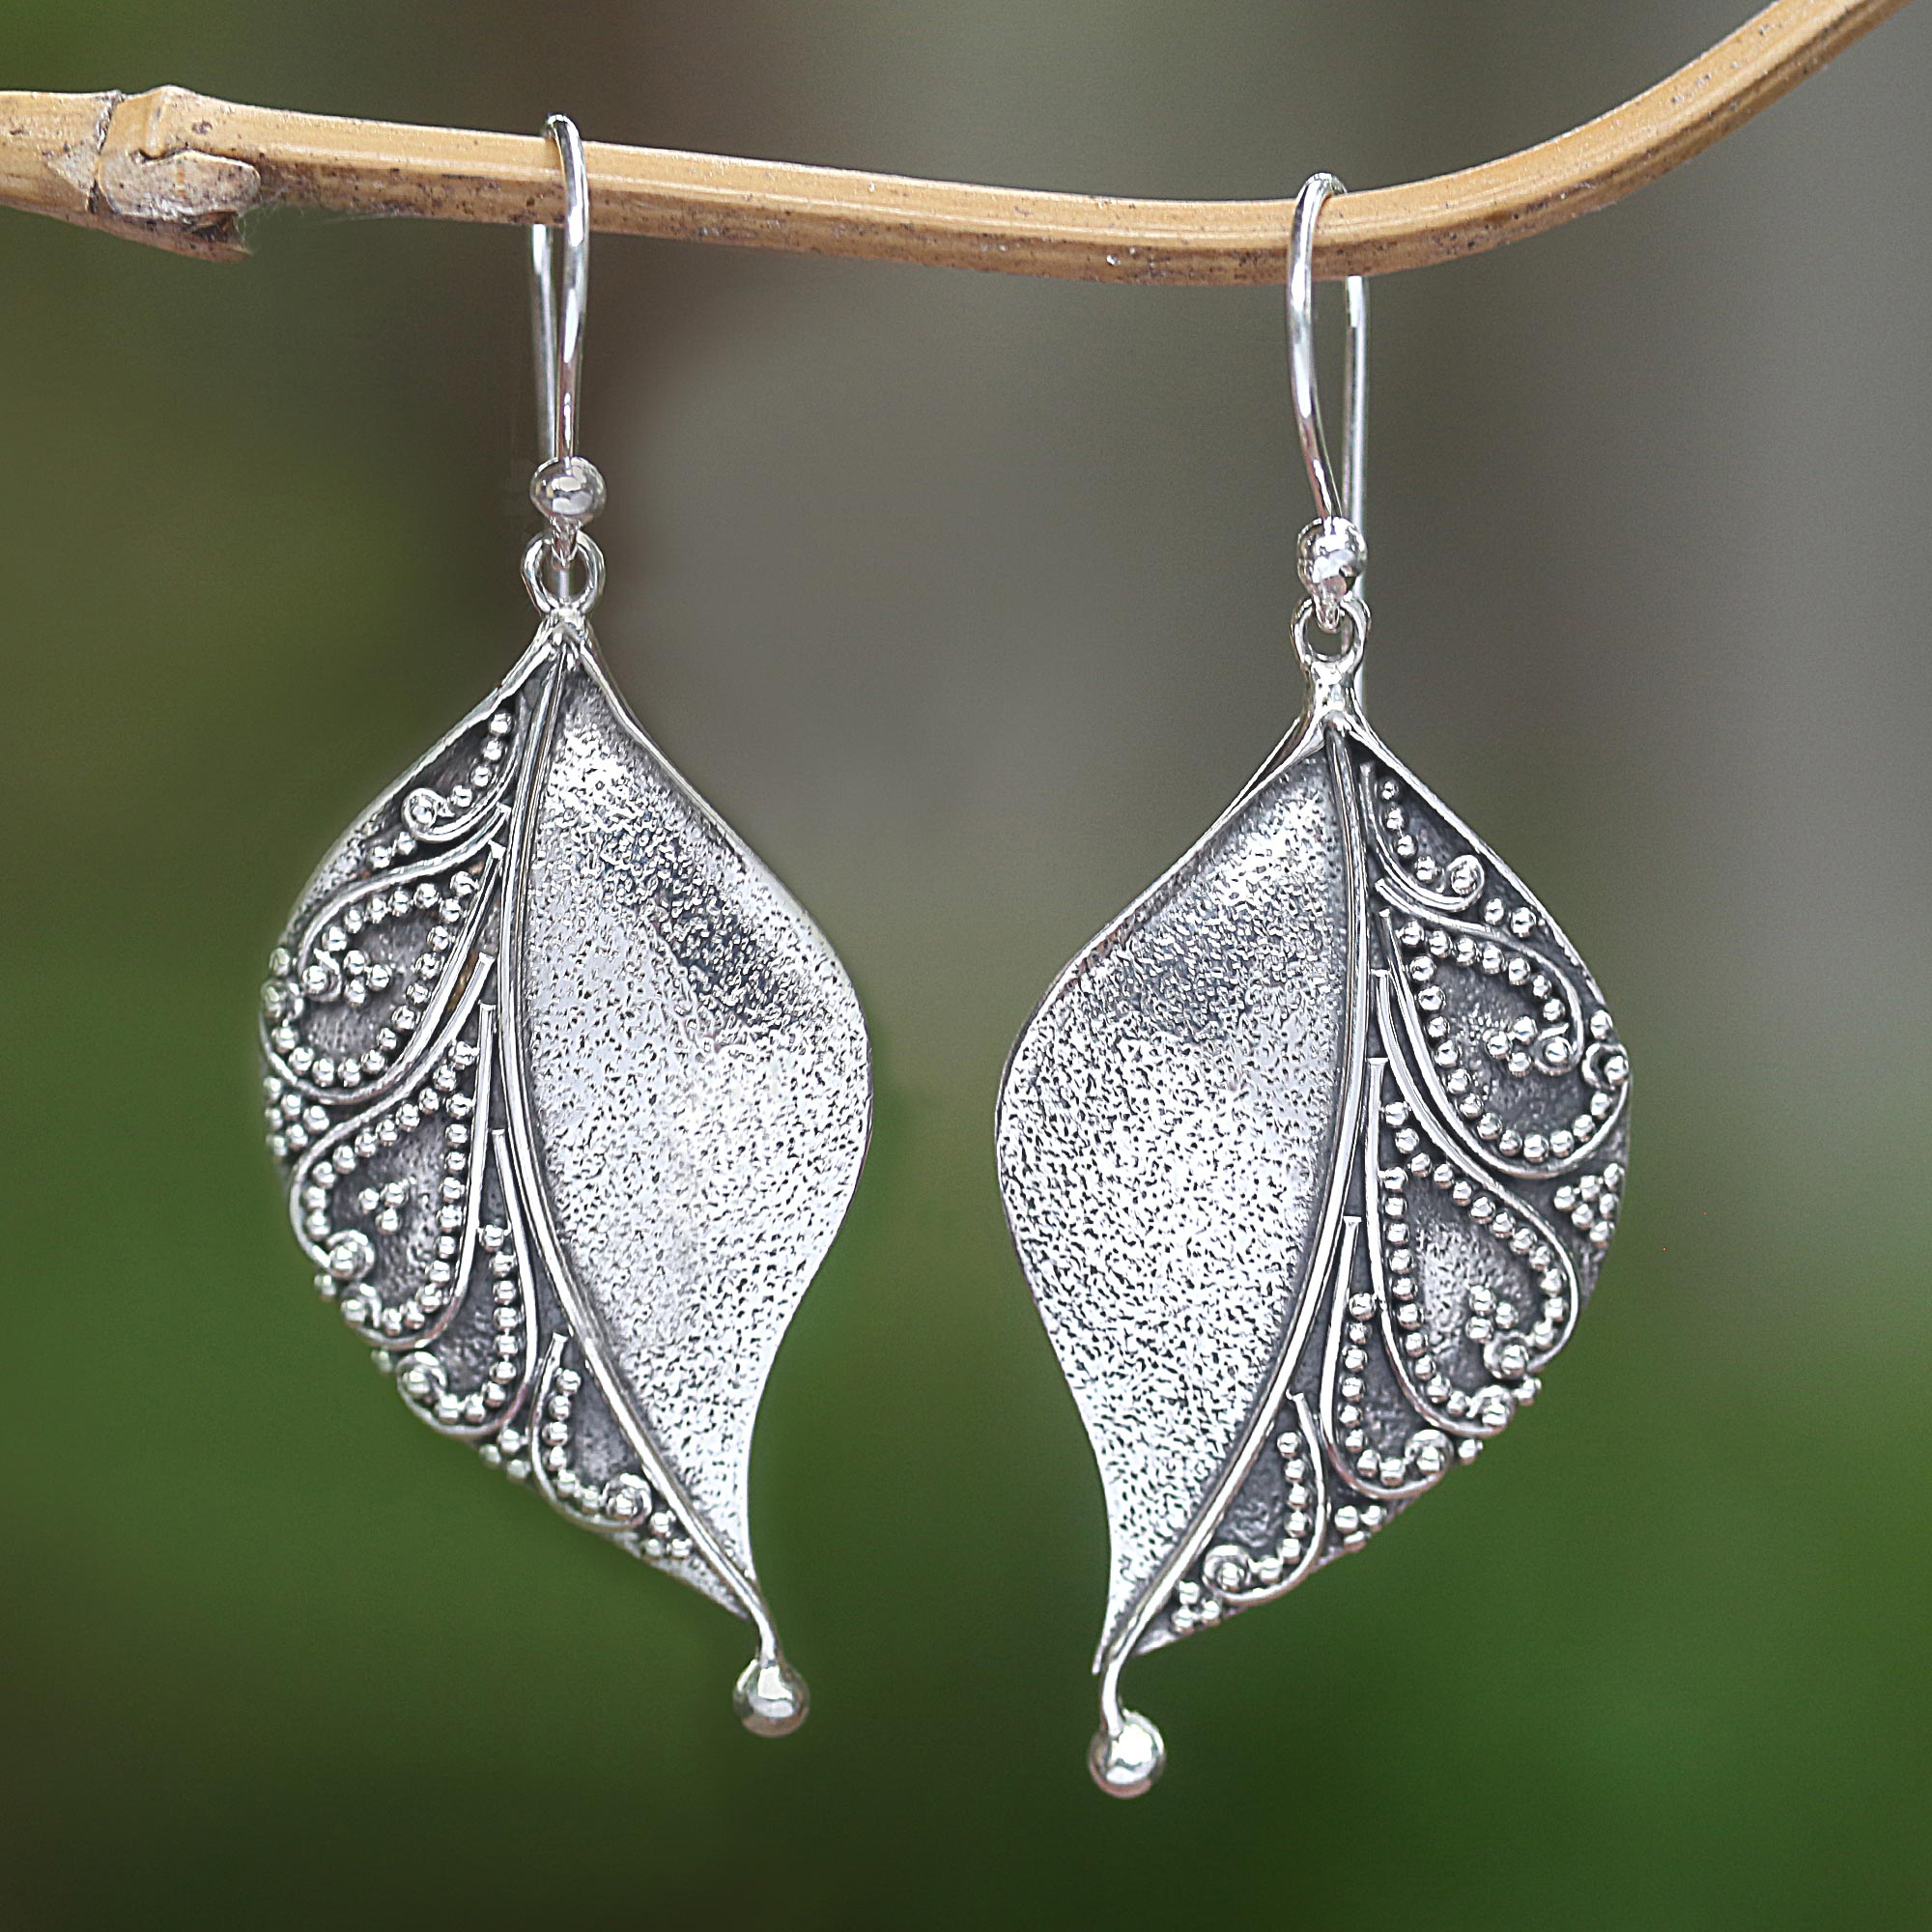 Small Heart Tibetan Silver Earrings rustic earrings jewelry for her gift for her silver earrings Cute tibetan silver earrings